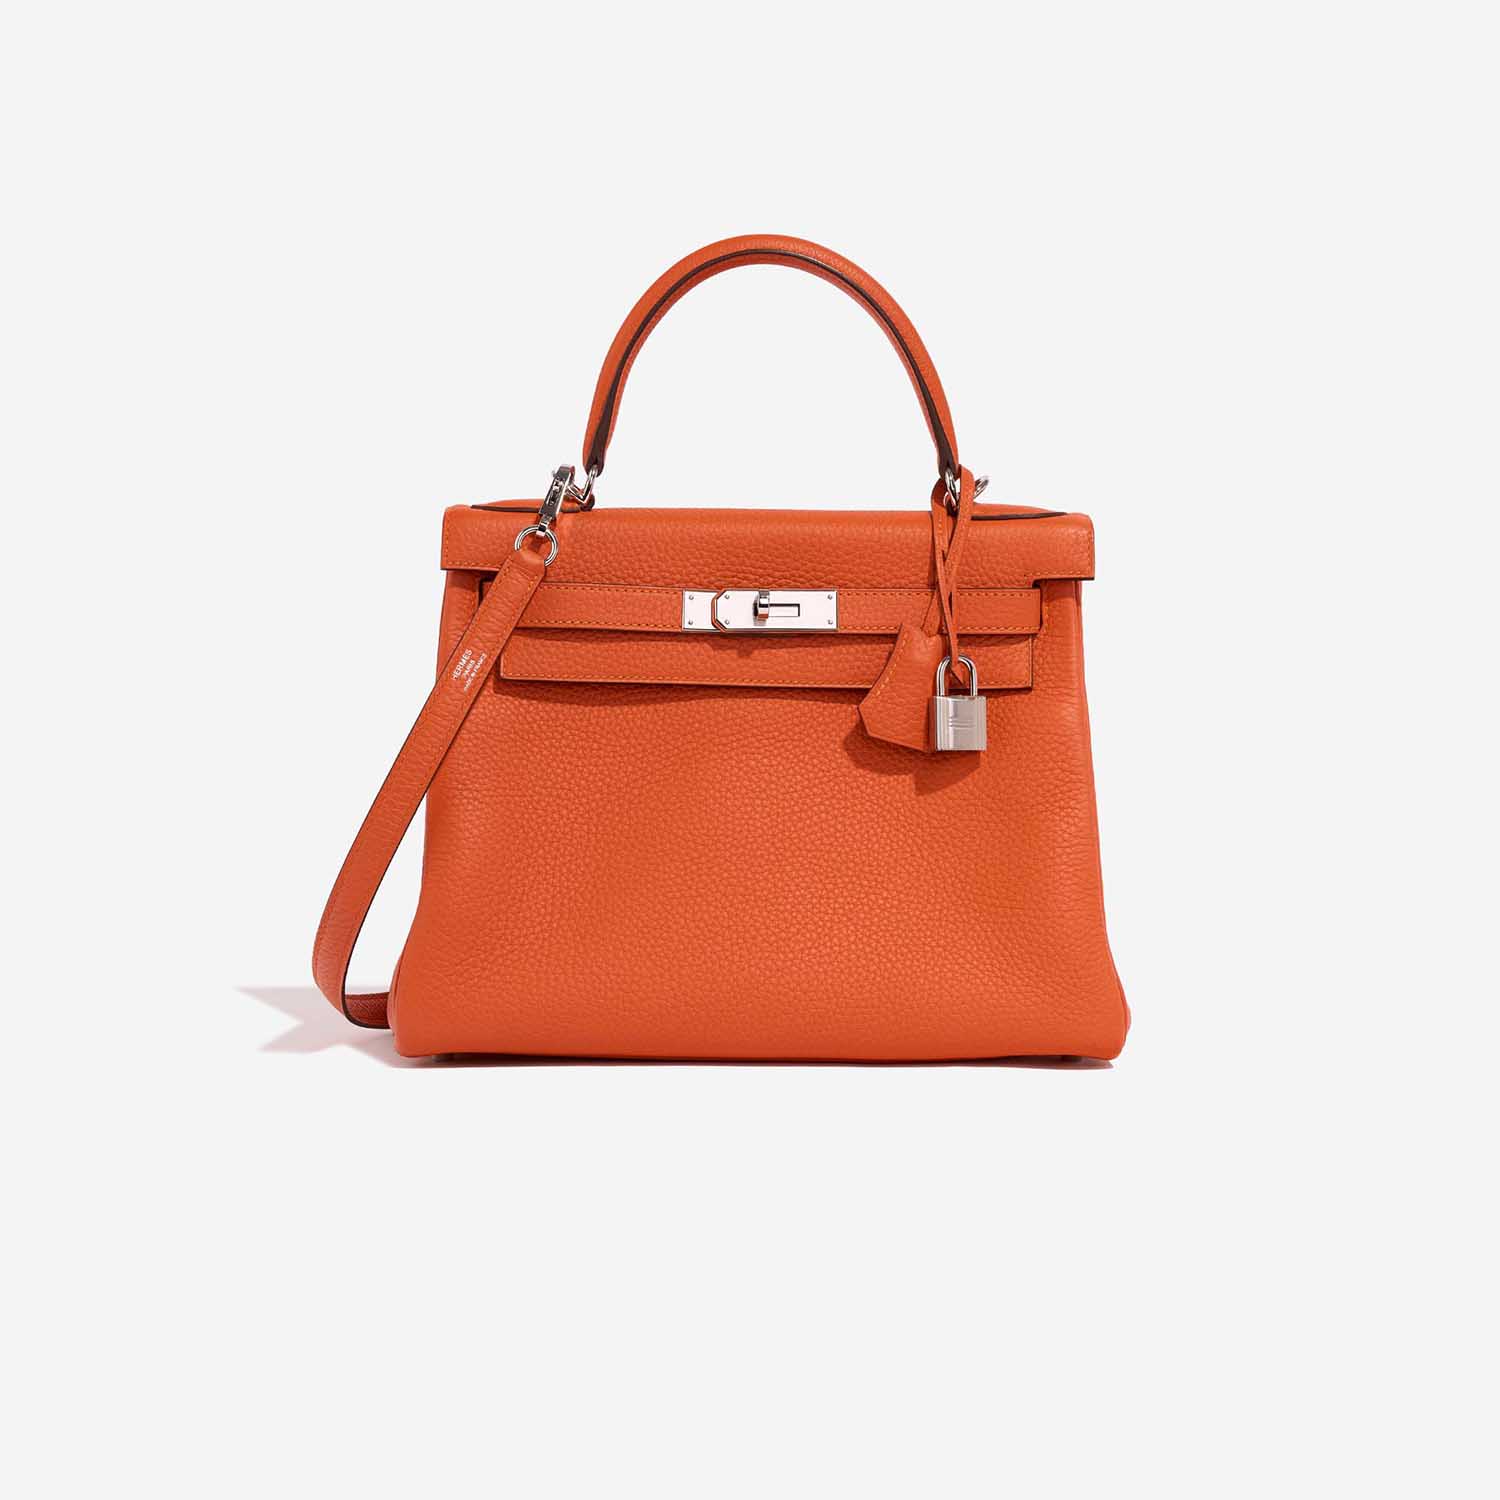 Hermès Kelly 28 Feu Front | Verkaufen Sie Ihre Designer-Tasche auf Saclab.com